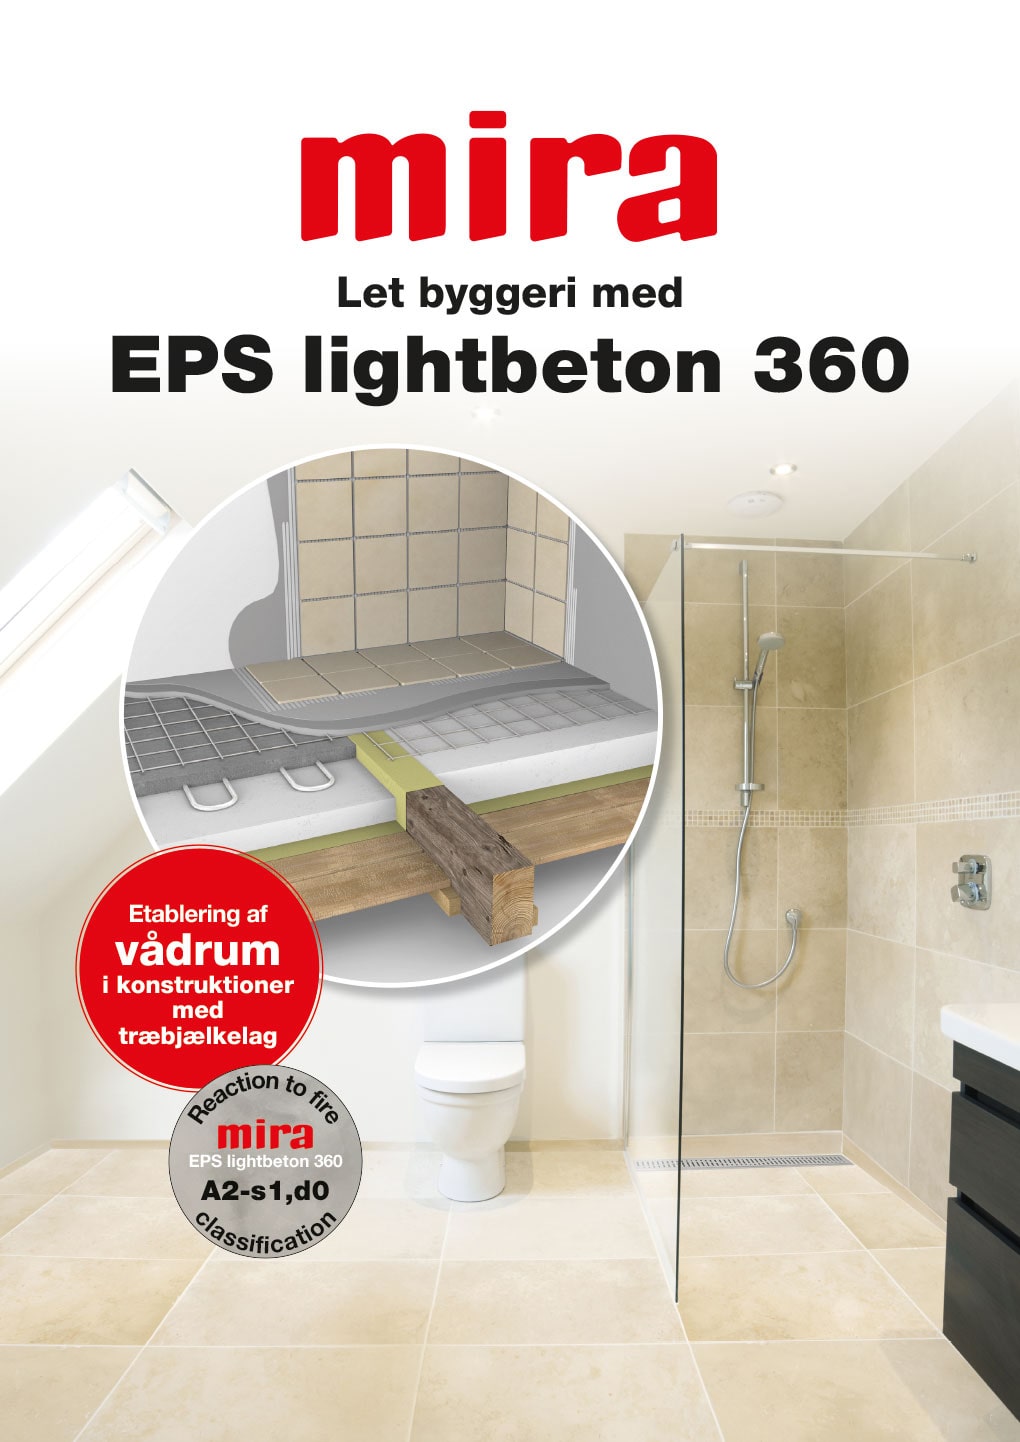 EPS lightbeton 360